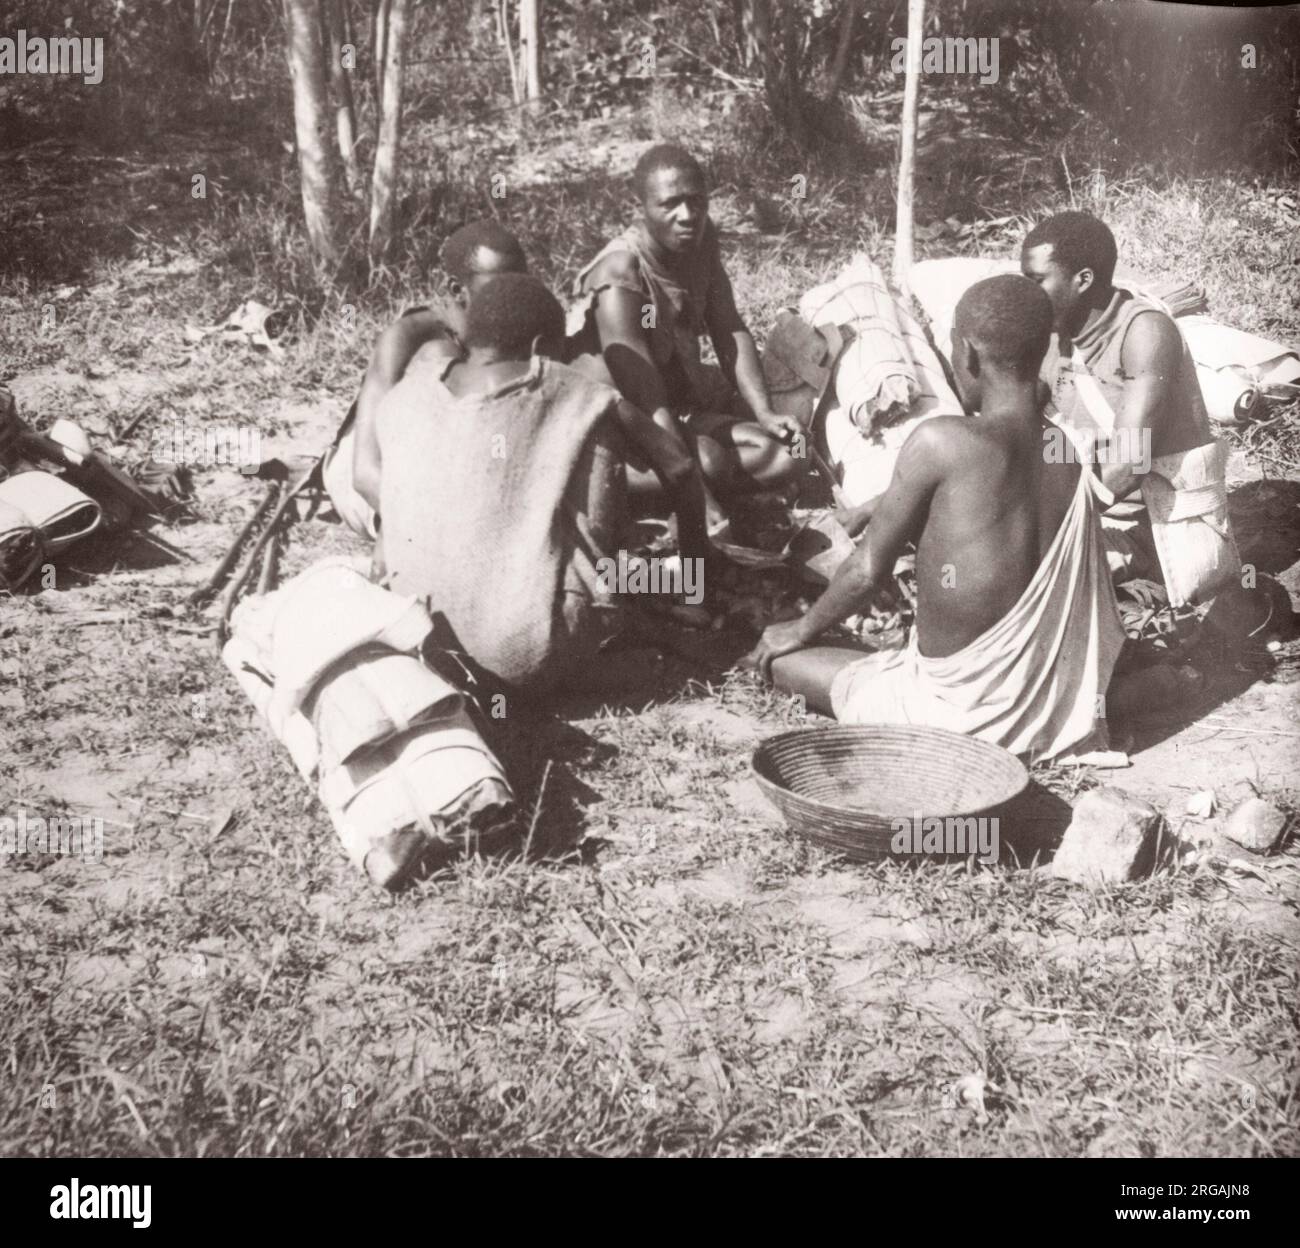 1940s Afrique de l'est - Ouganda - travailleurs migrants du Congo avec leurs paquets de voyage Photographie d'un officier de recrutement de l'armée britannique stationnés en Afrique de l'est et au Moyen-Orient pendant la Seconde Guerre mondiale Banque D'Images